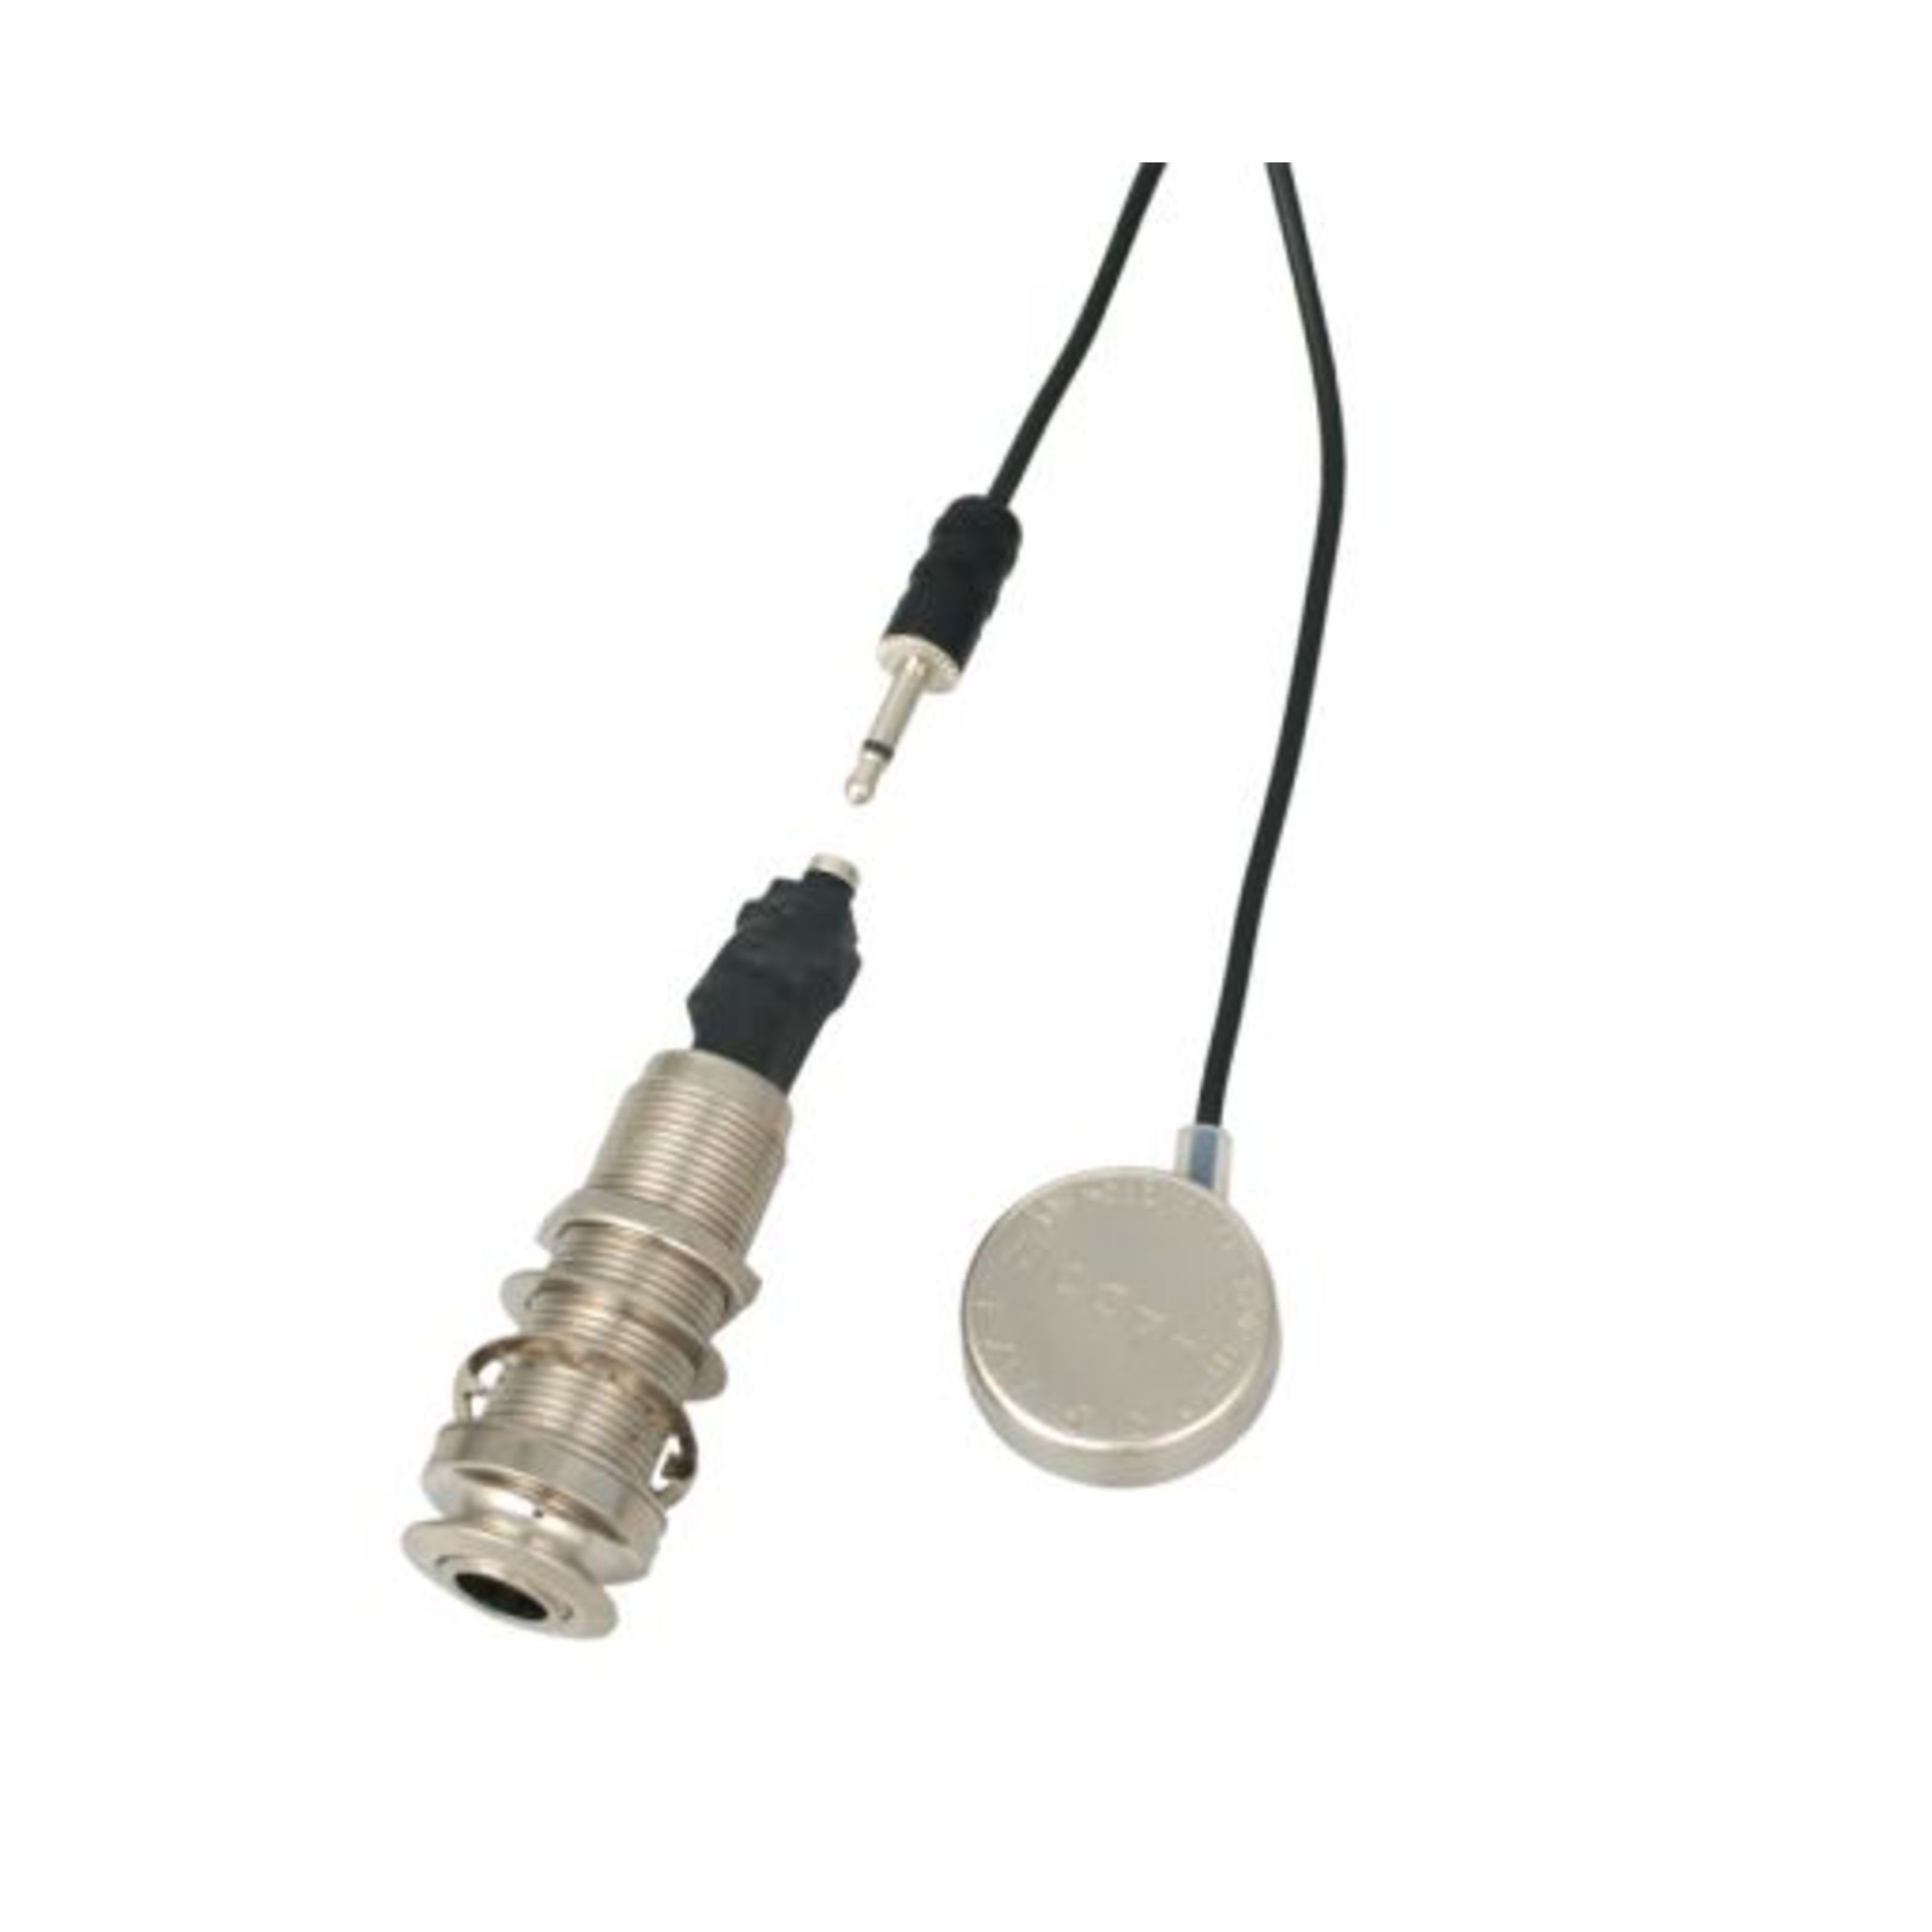 Shadow Tonabnehmer, (SH 2500E Transducer mit Endknopfausgangsbuchse), SH2500E Transducer - Tonabnehmer für Gitarren